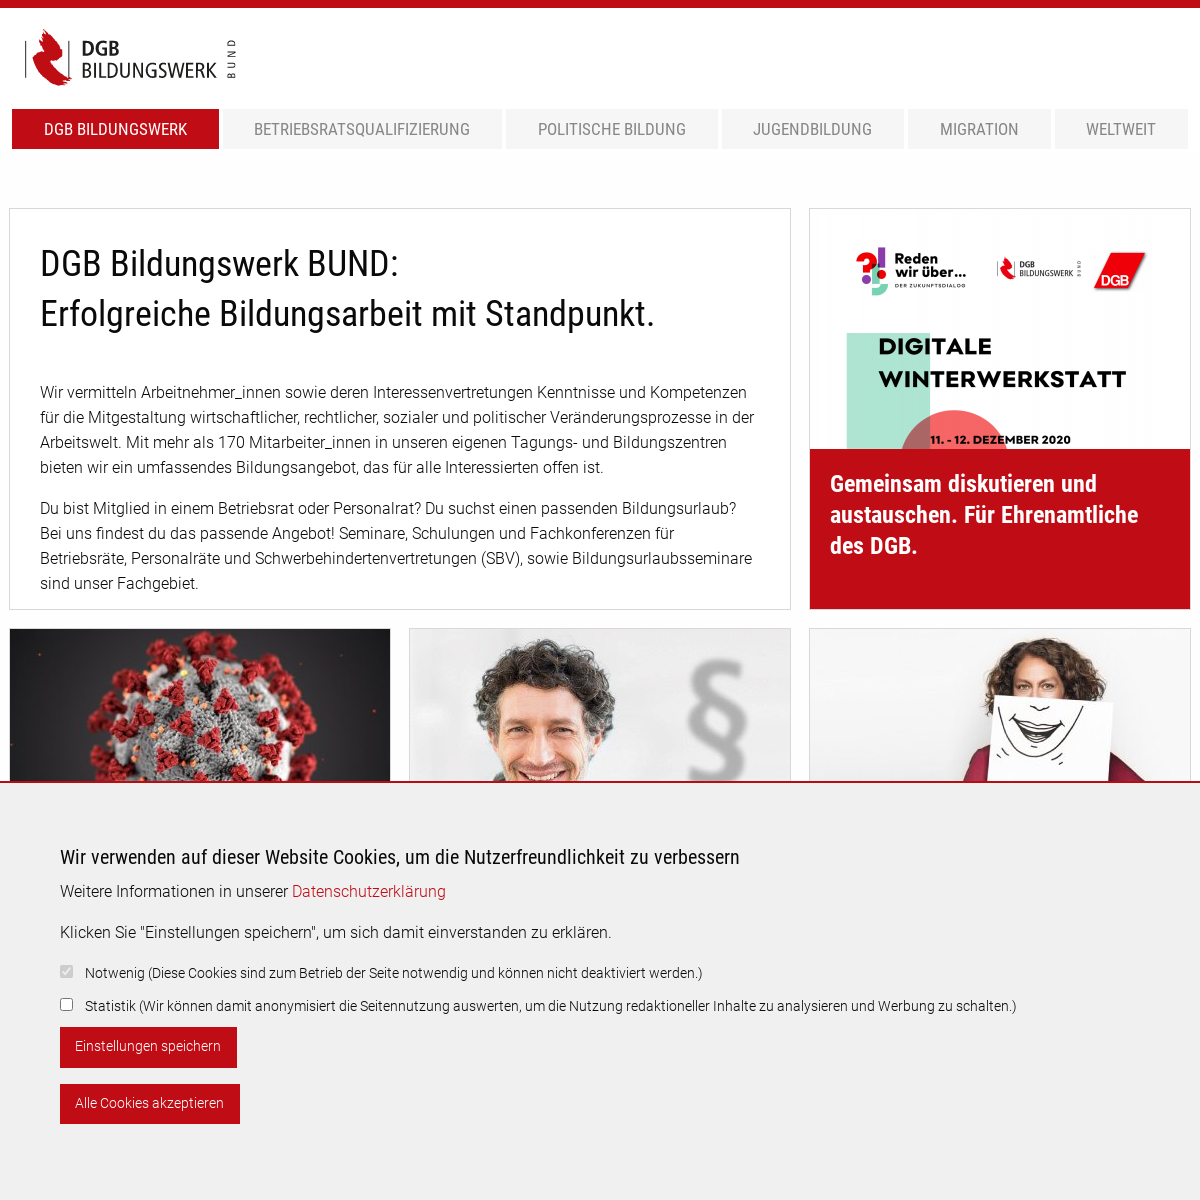 A complete backup of dgb-bildungswerk.de